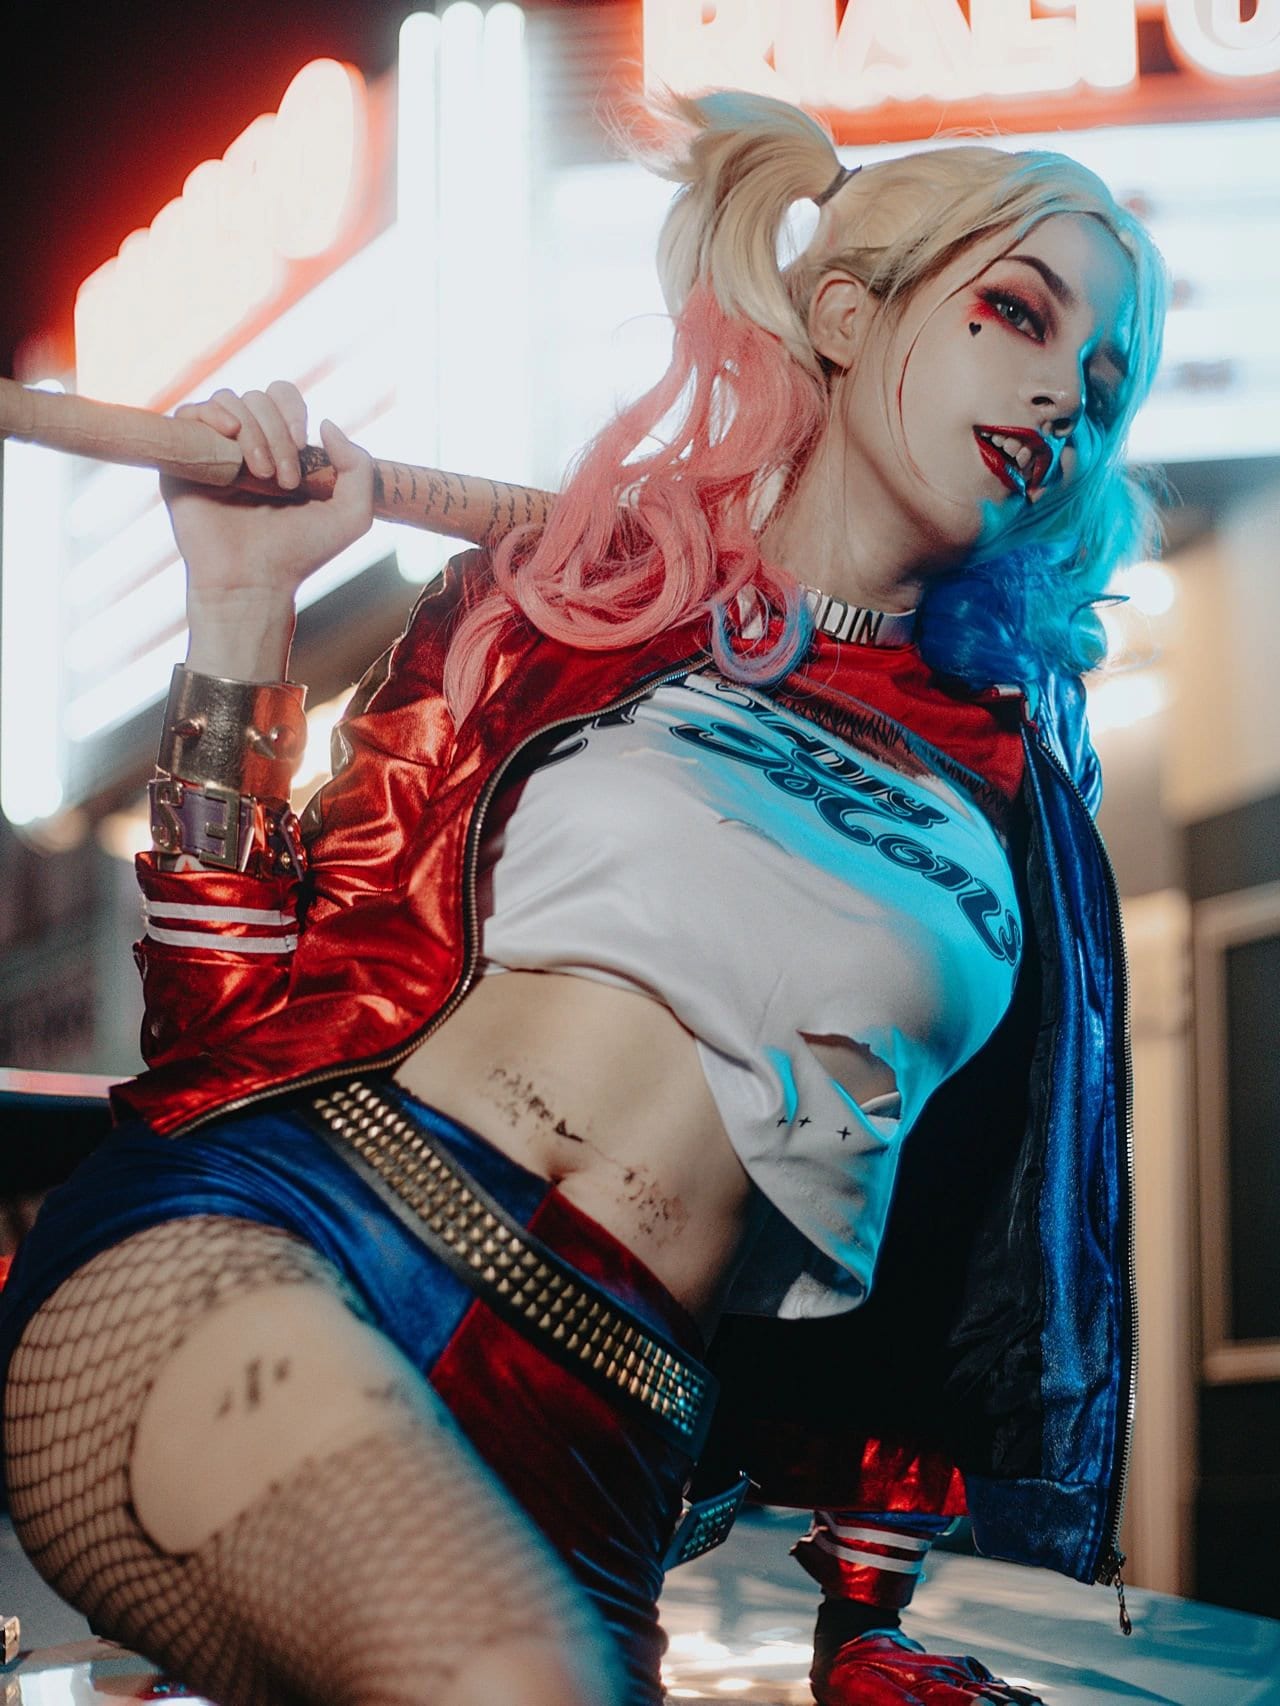 Harley Quinn Suicide Squad - Accessori cosplay set completo con mazza da  baseball